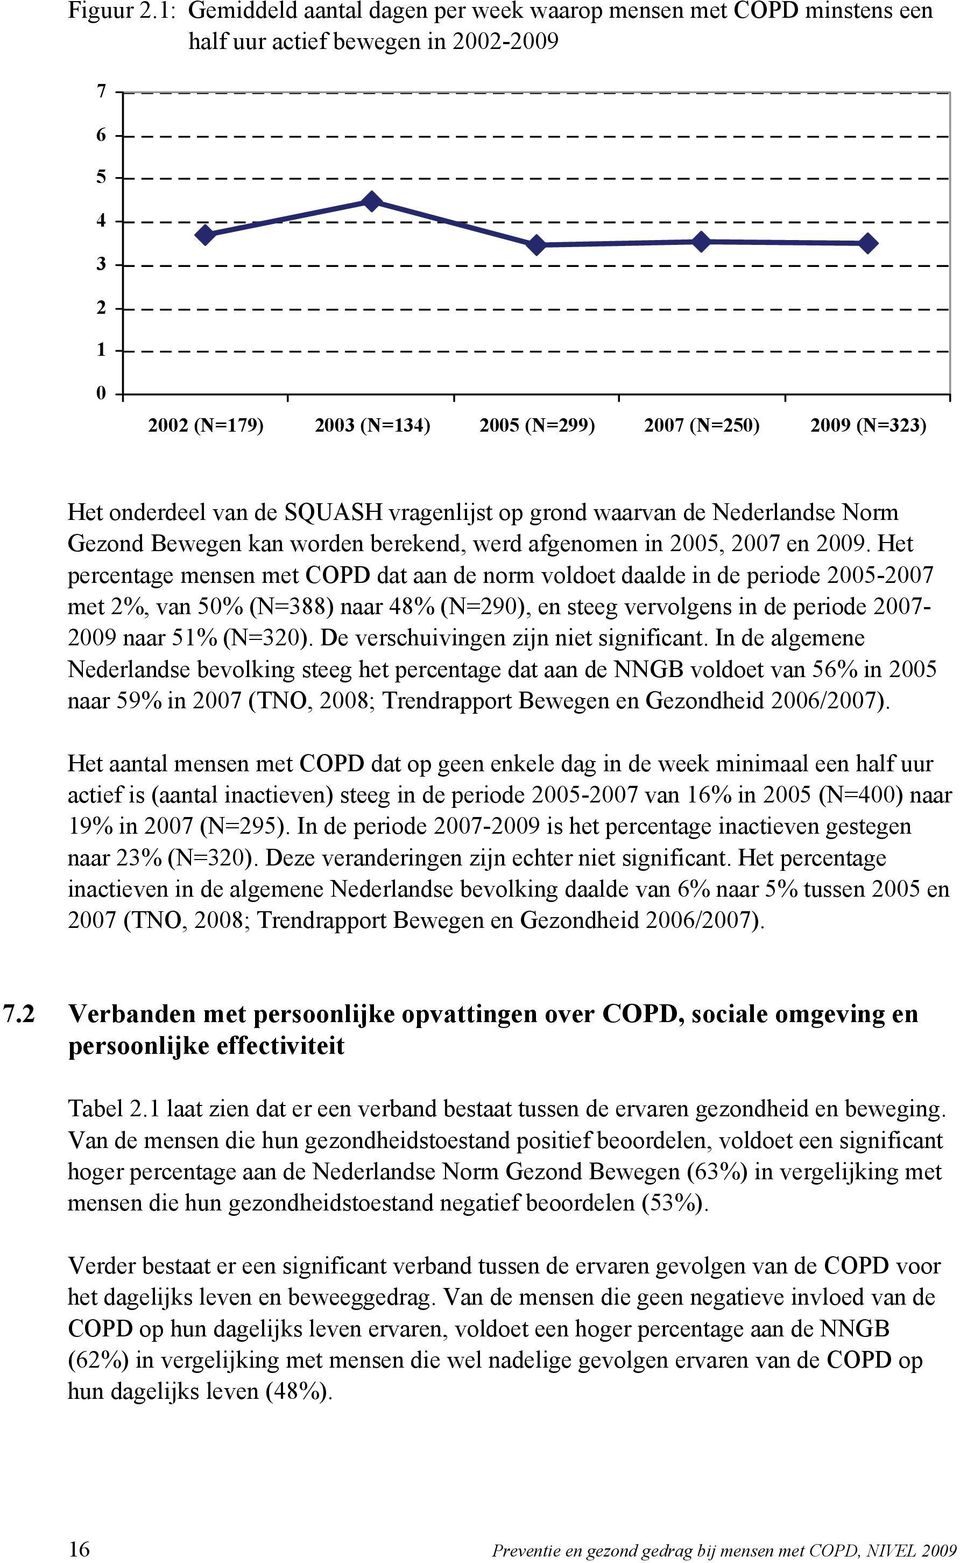 onderdeel van de SQUASH vragenlijst op grond waarvan de Nederlandse Norm Gezond Bewegen kan worden berekend, werd afgenomen in 2005, 2007 en 2009.